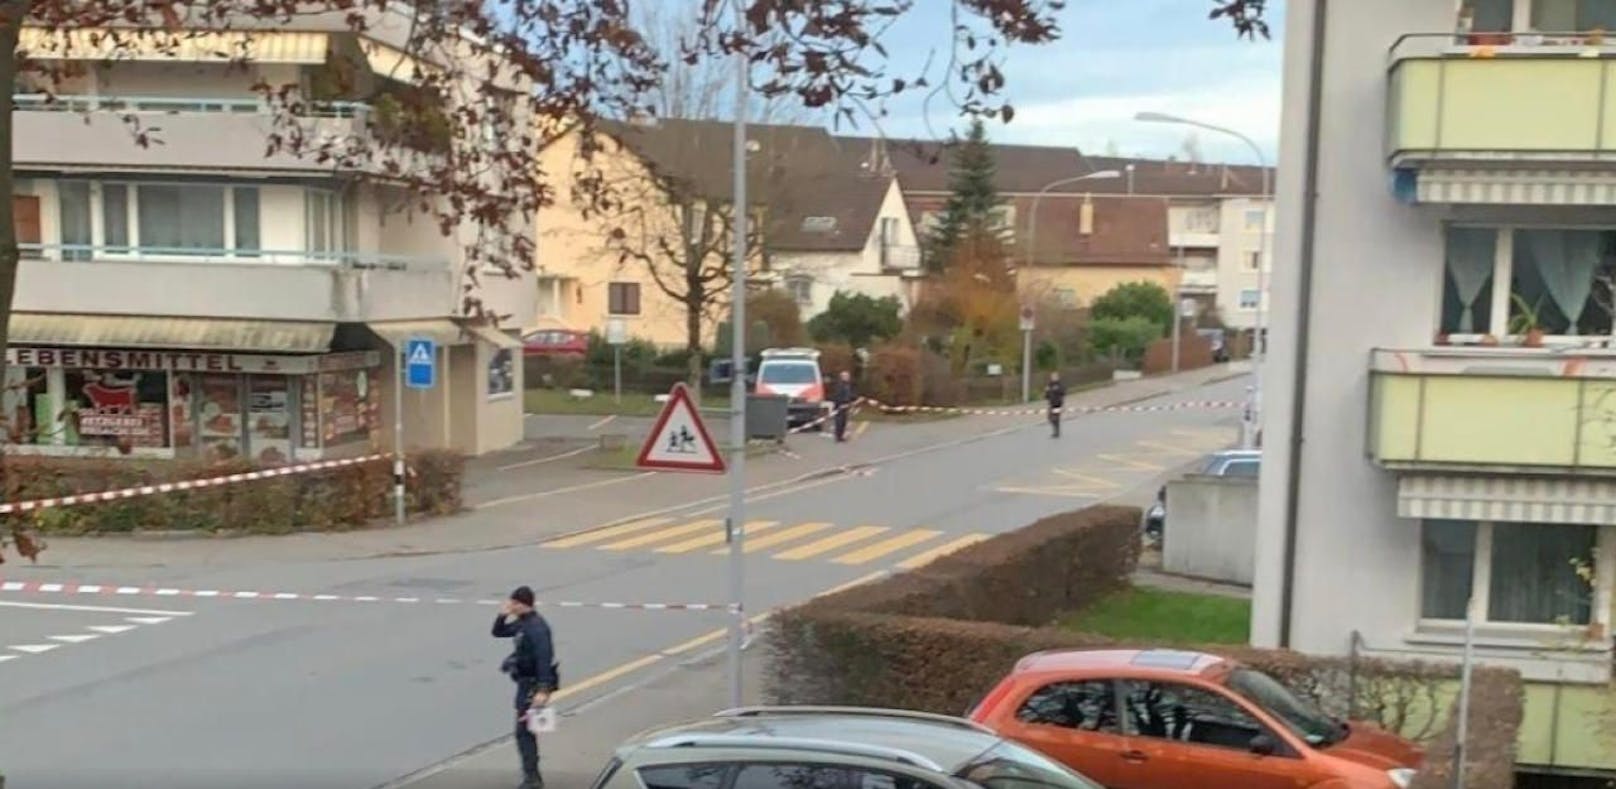 Ein Mann wurde am Sonntag in Zürich angeschossen.